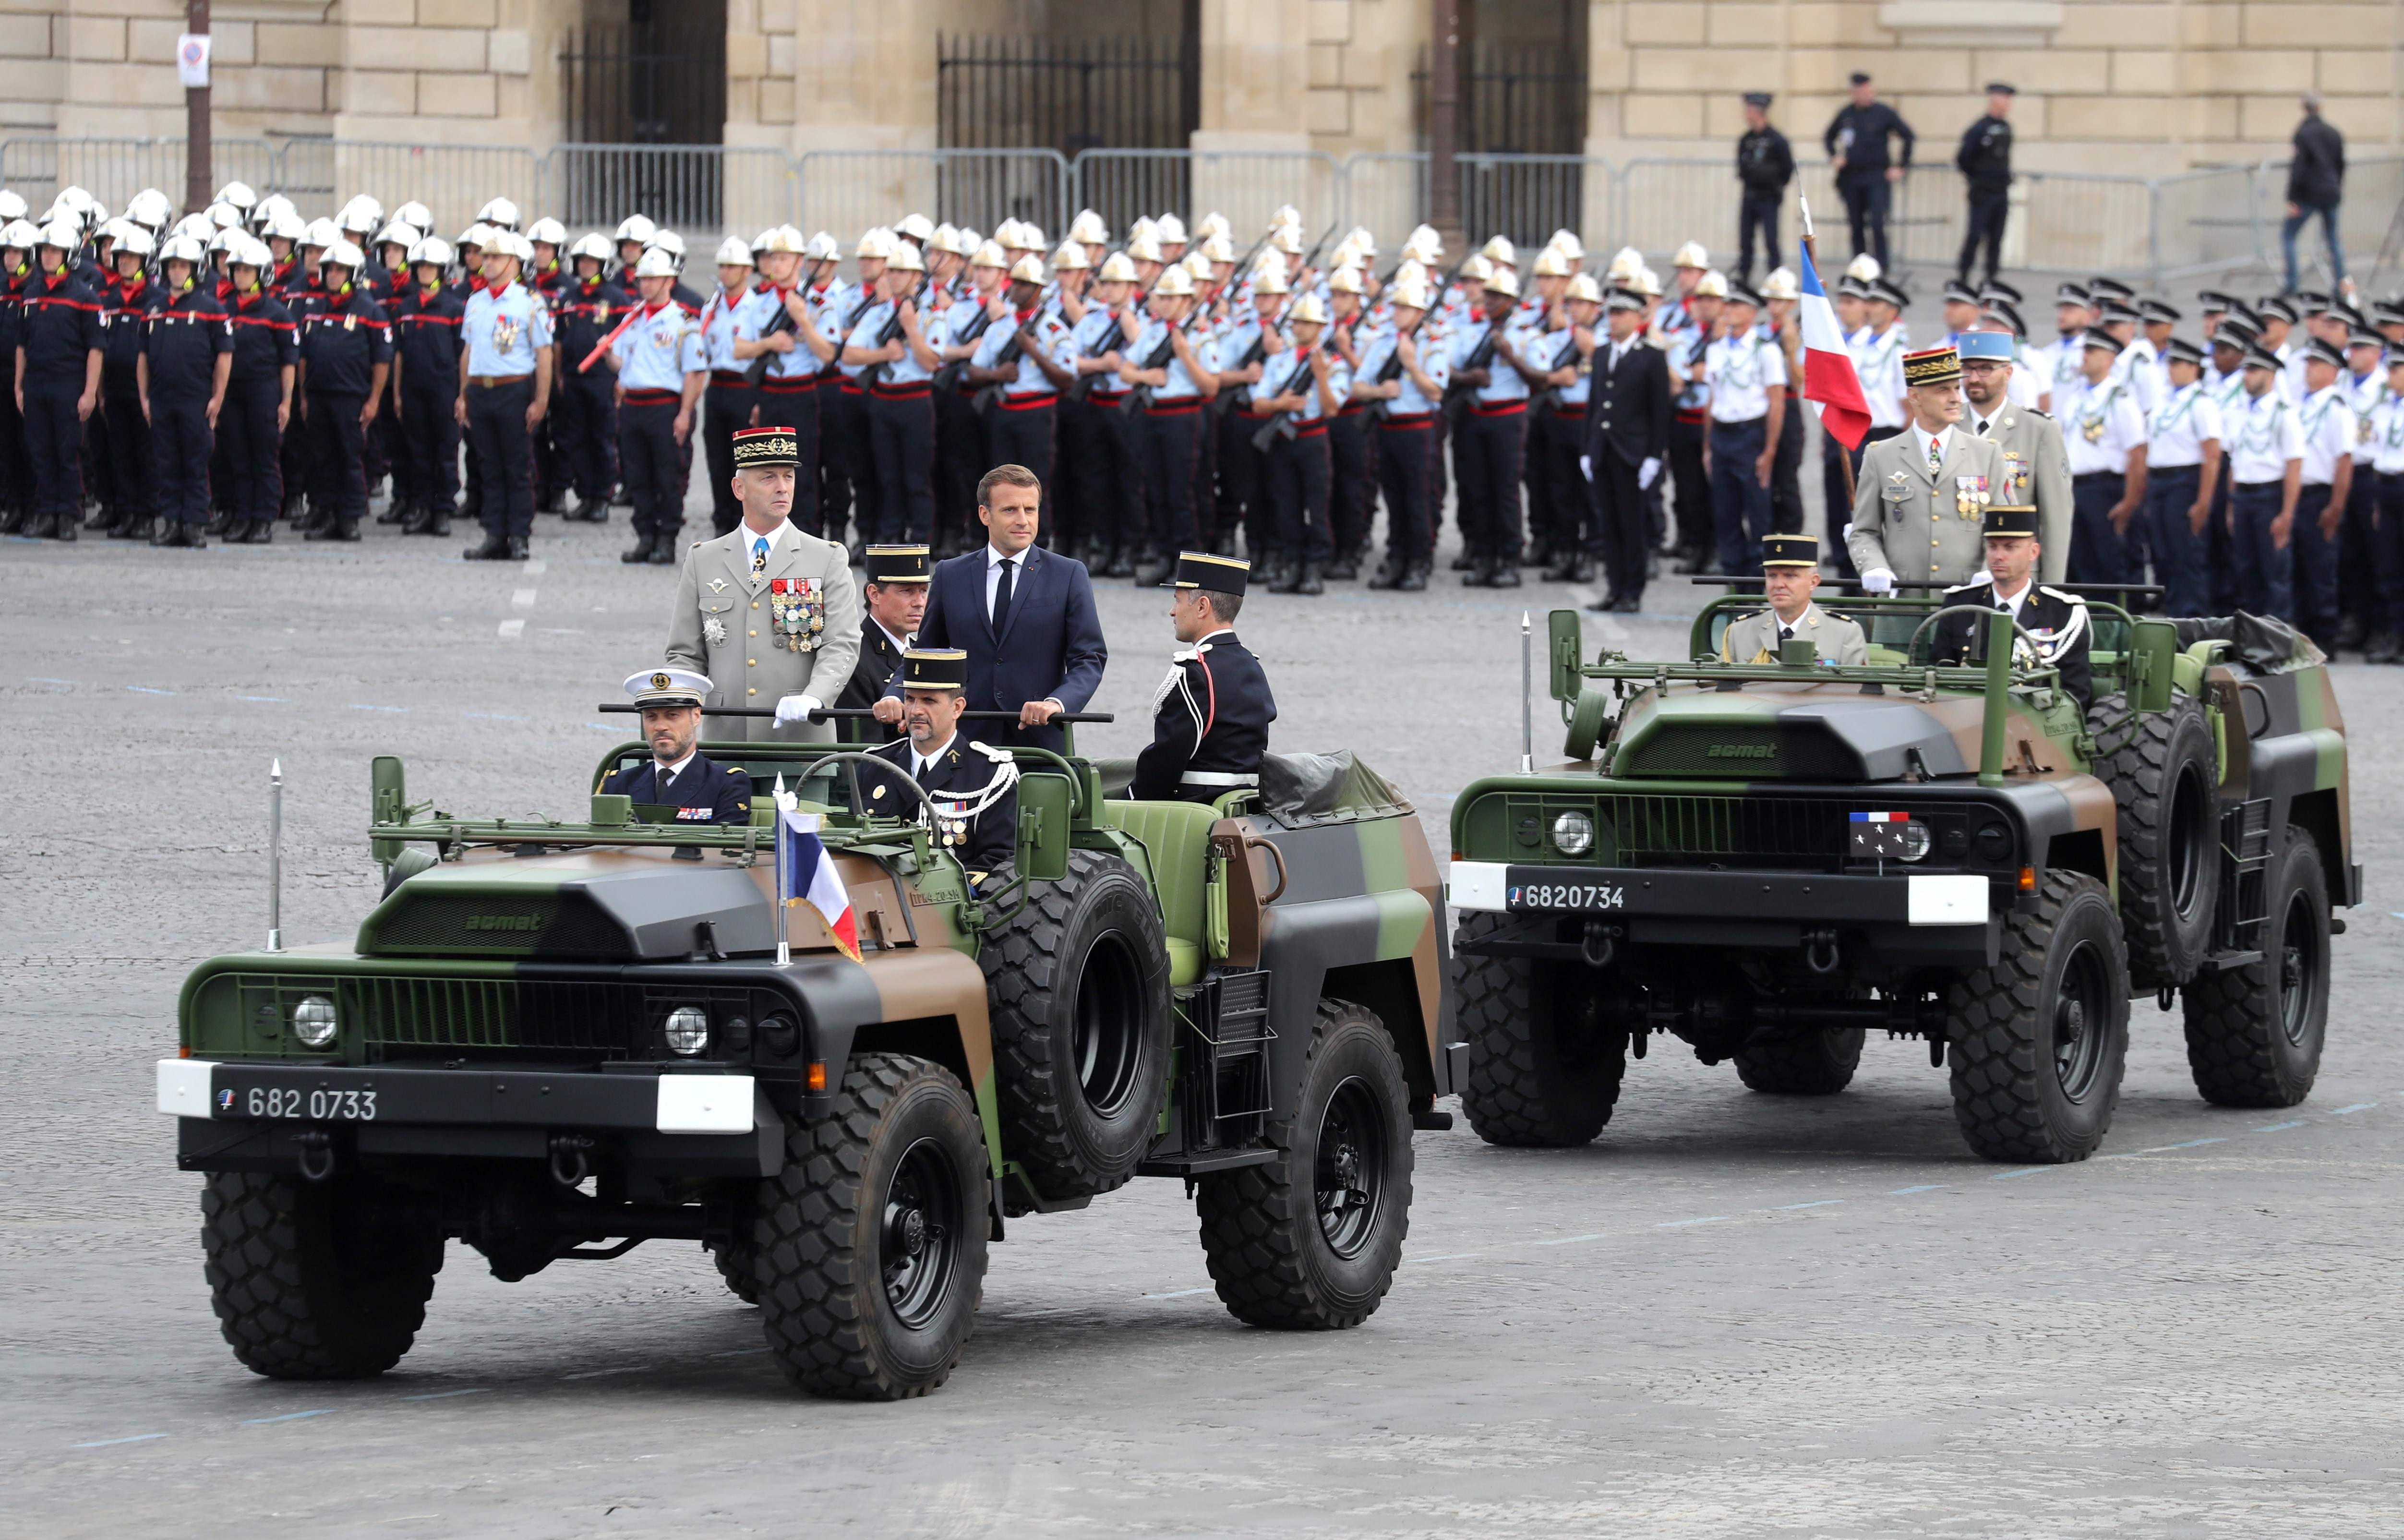 El presidente francés Emmanuel Macron llega con el jefe del Estado Mayor de la Defensa, el general Francois Lecointre, mientras asisten a la ceremonia militar anual del Día de la Bastilla el 14 de julio de 2020 (Foto: Ludovic Marin/AFP/dpa)
